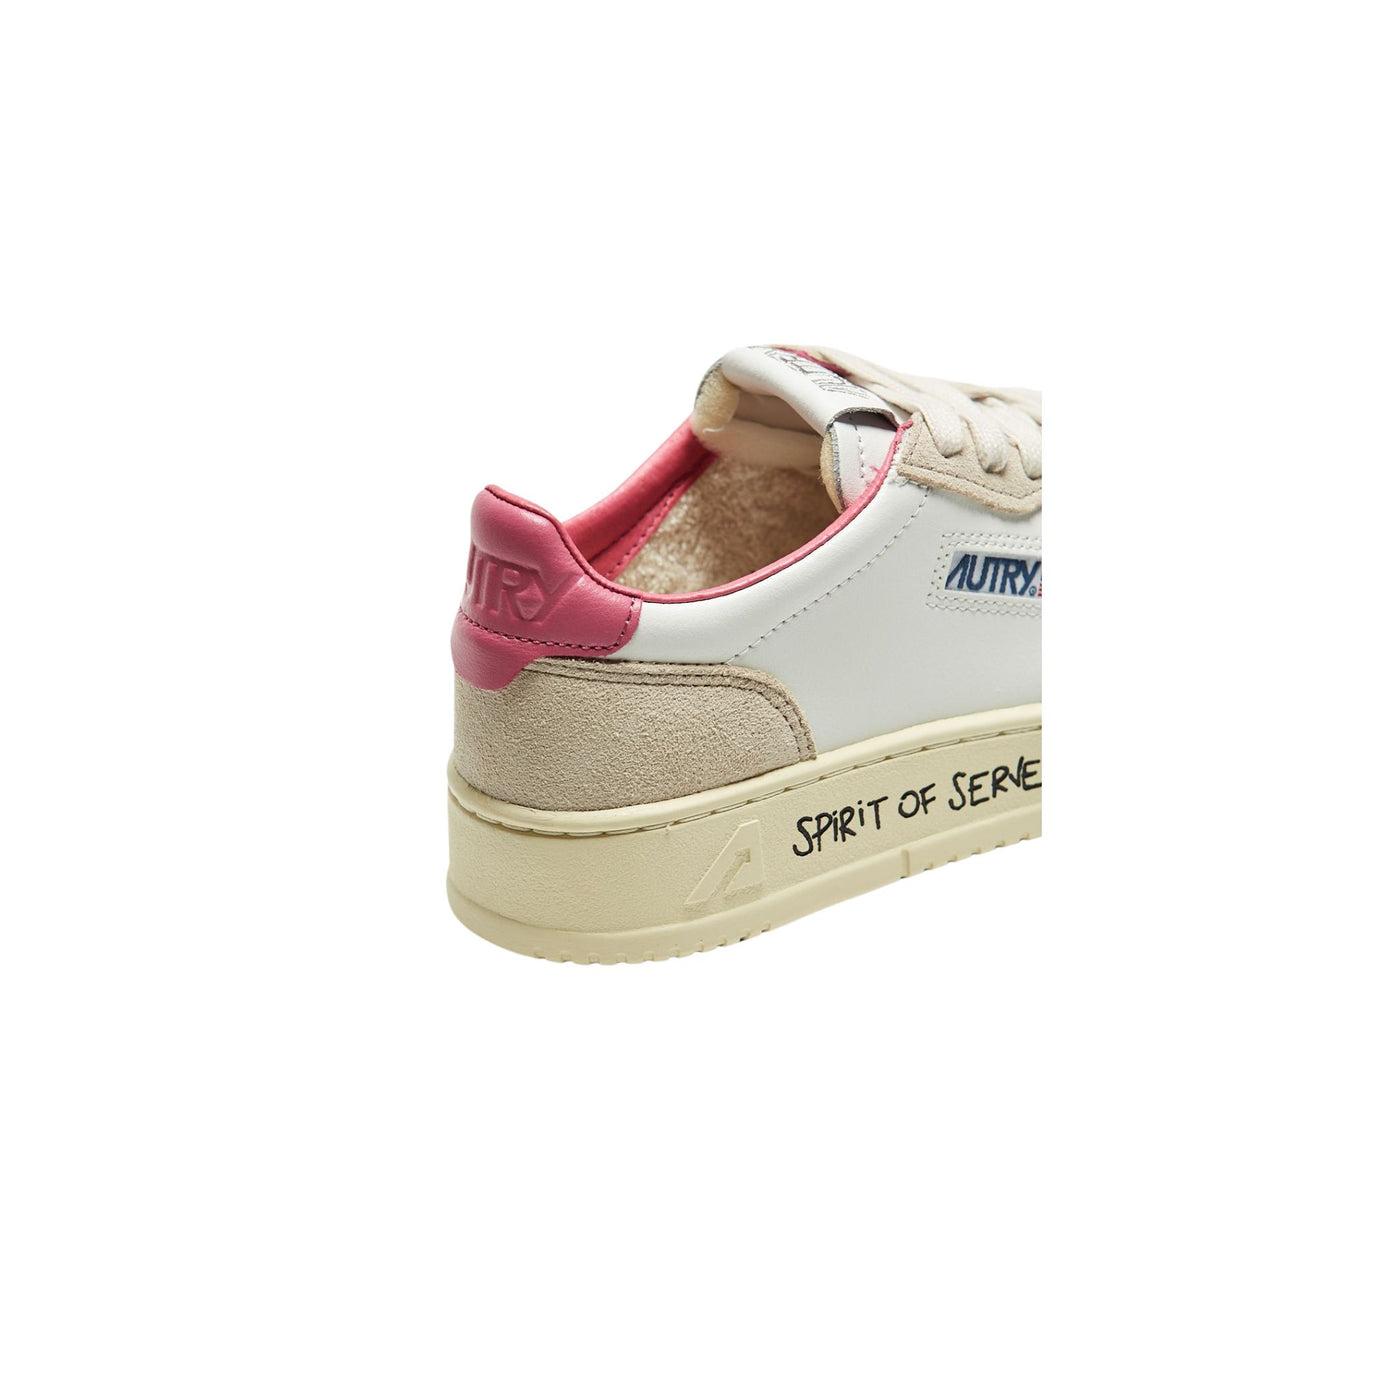 Dettaglio retro Sneakers Donna bianche con dettagli rosa e con scritta nera sulla suola